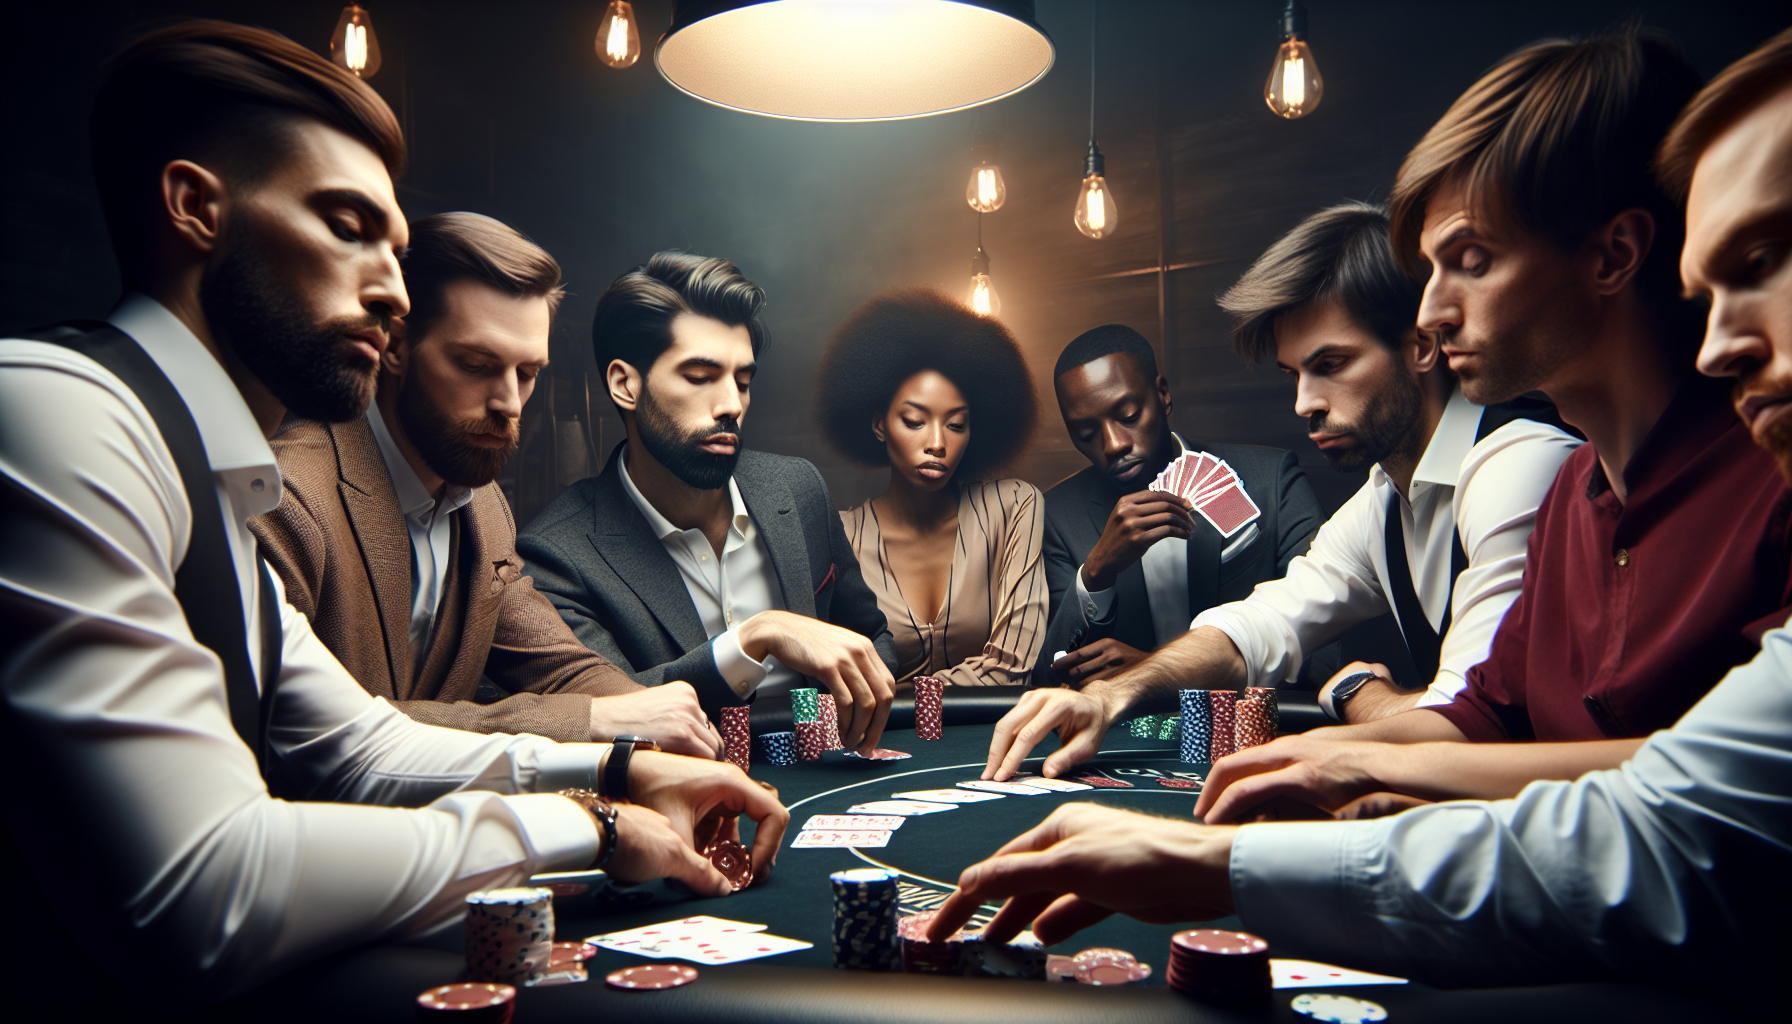 découvrez l'expérience ultime du poker en direct avec notre plateforme de jeu de poker en ligne. profitez d'une action palpitante en direct et de parties de poker passionnantes.